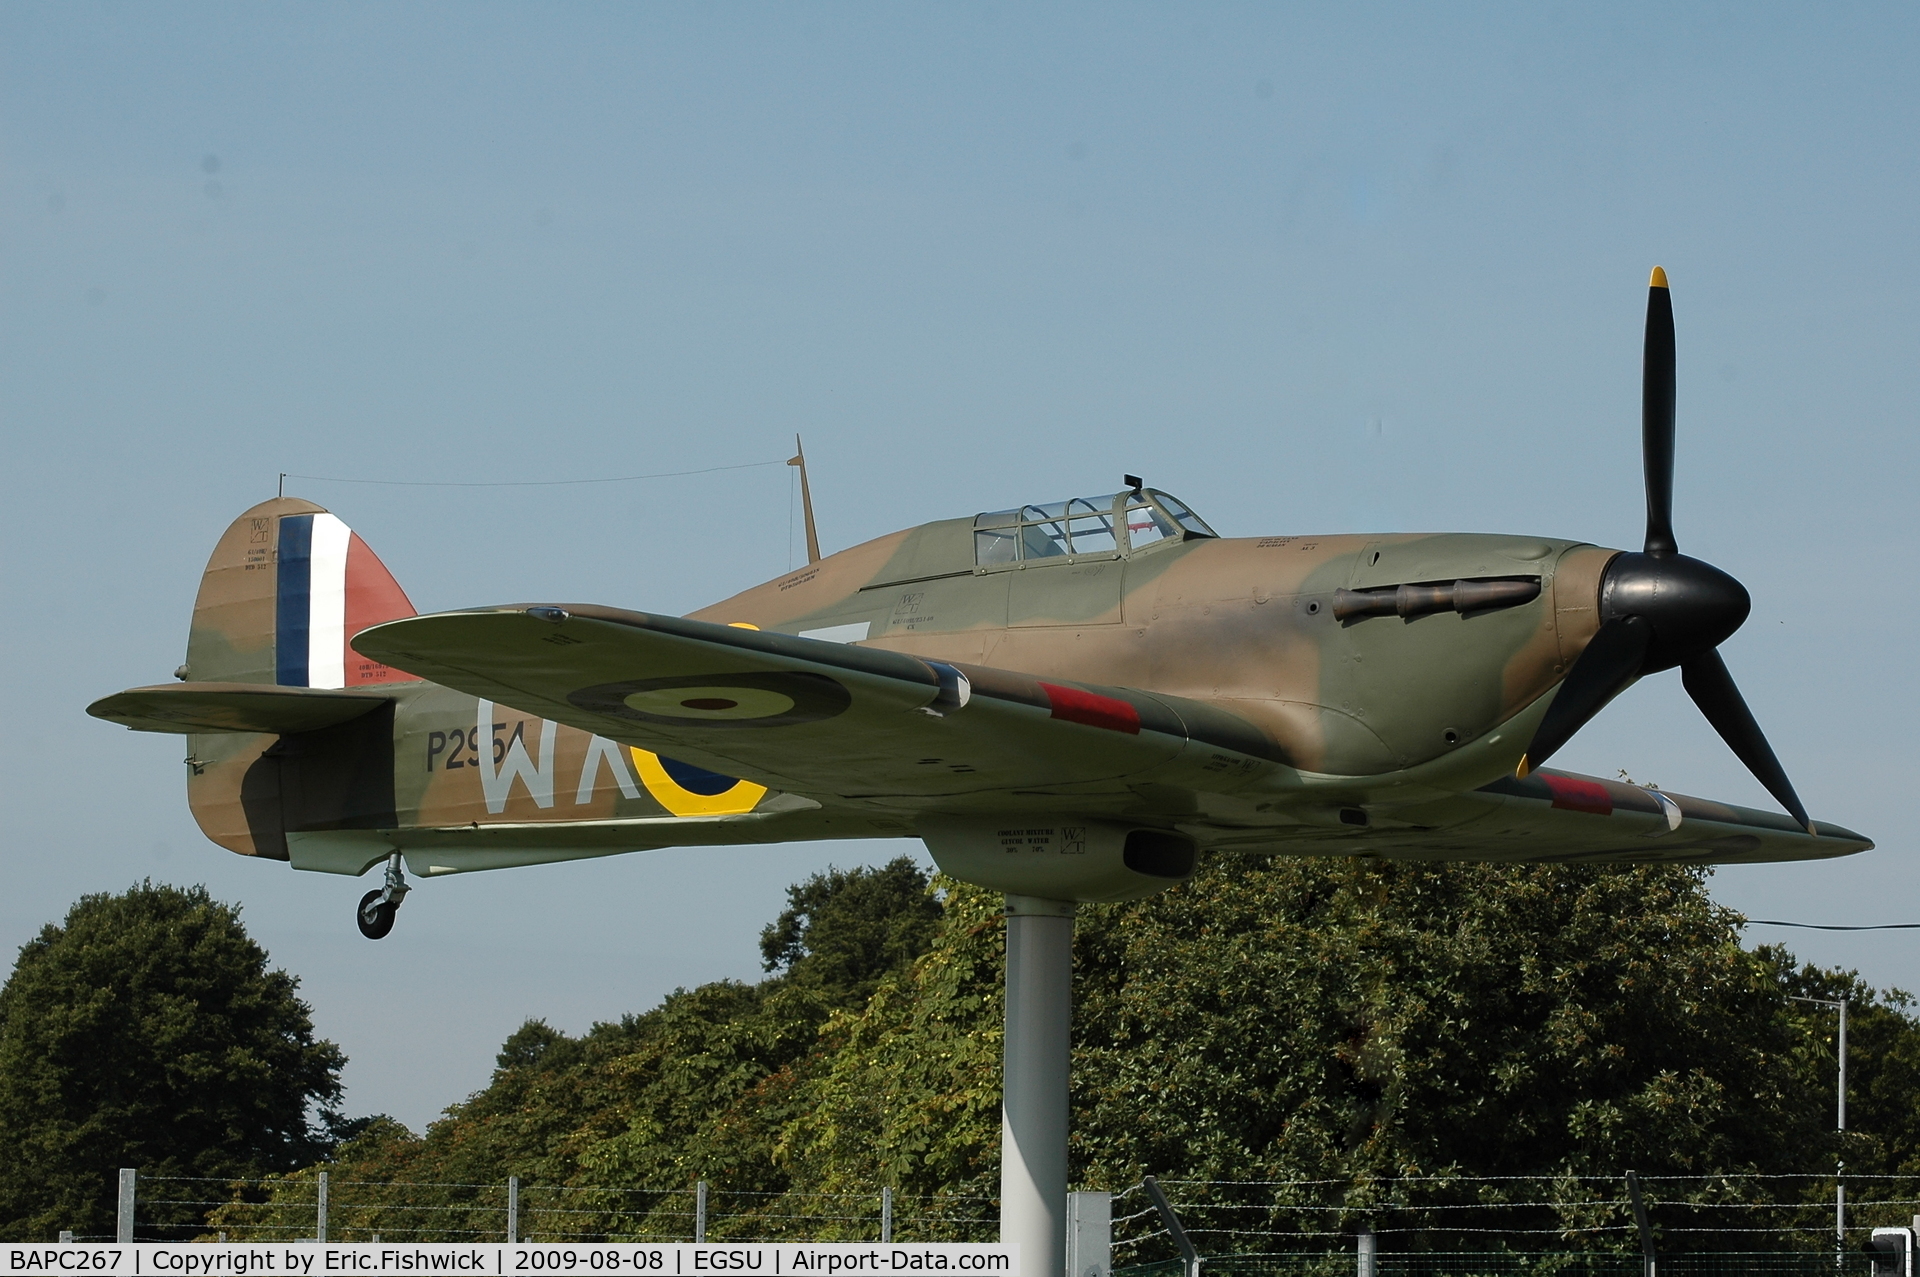 BAPC267, Hawker Hurricane Replica C/N BAPC.267, Hawker Hurricane replica at the Gates representing Duxford based squadron